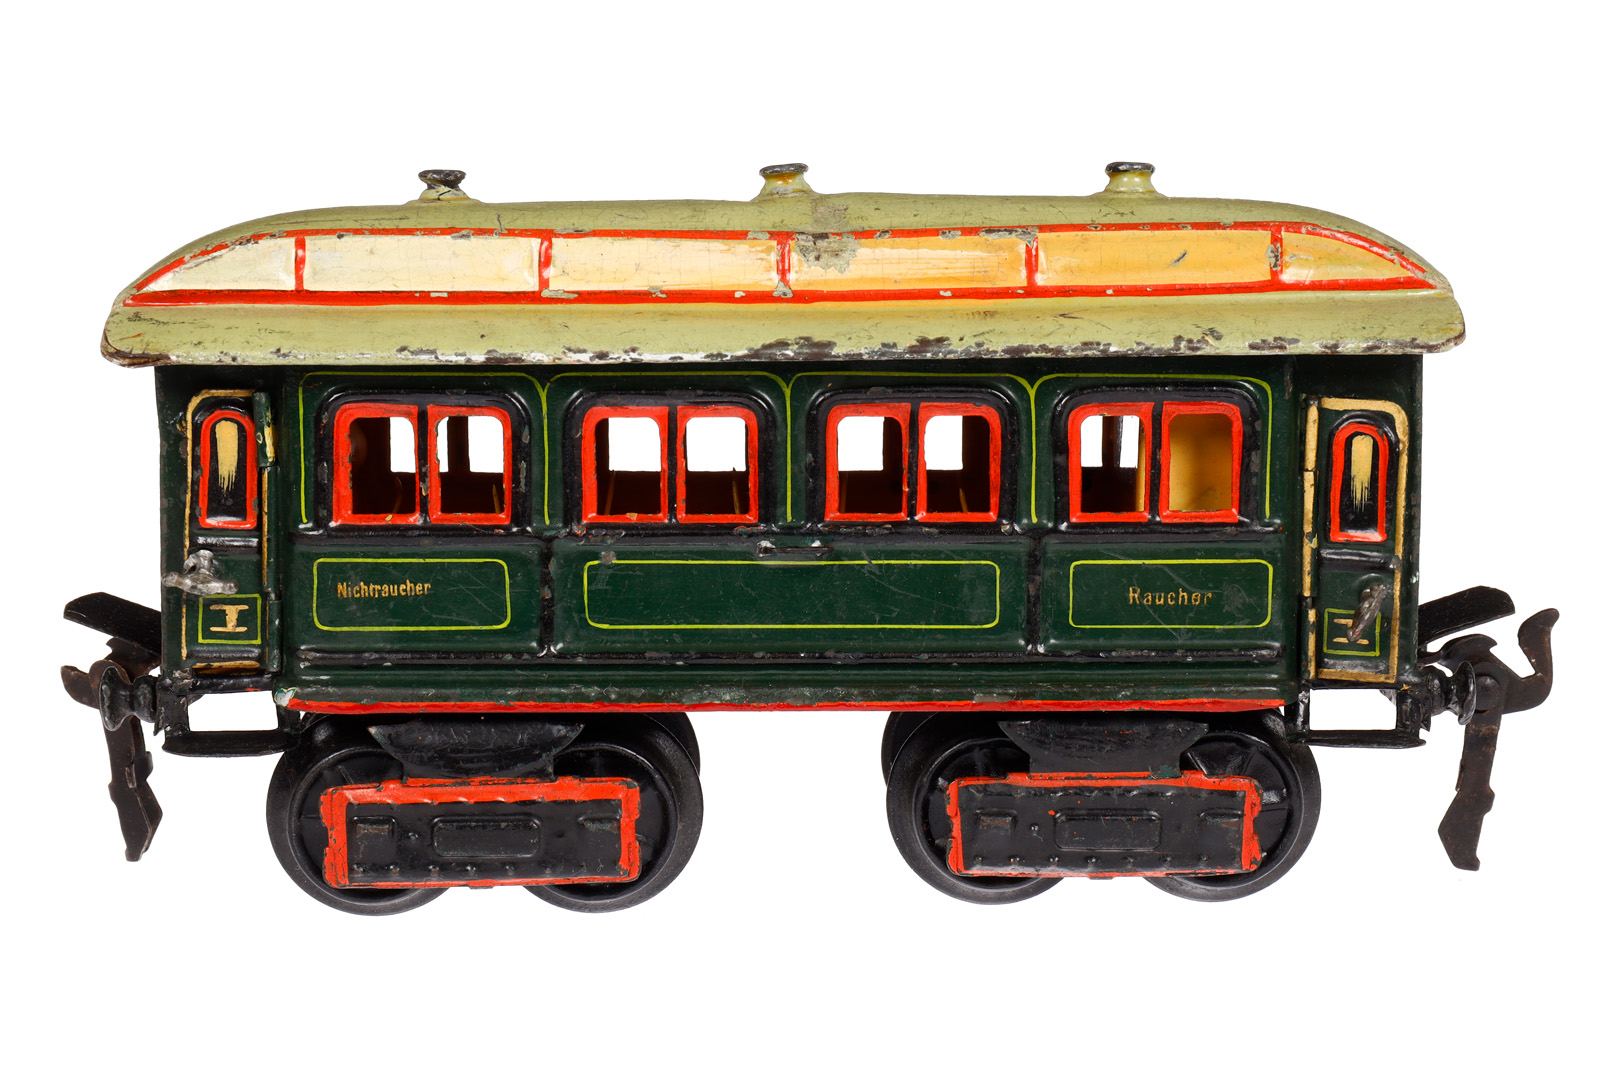 Märklin Personenwagen 1841, Spur 0, uralt, HL, mit Inneneinrichtung und 4 AT, ohne Schilder, 1